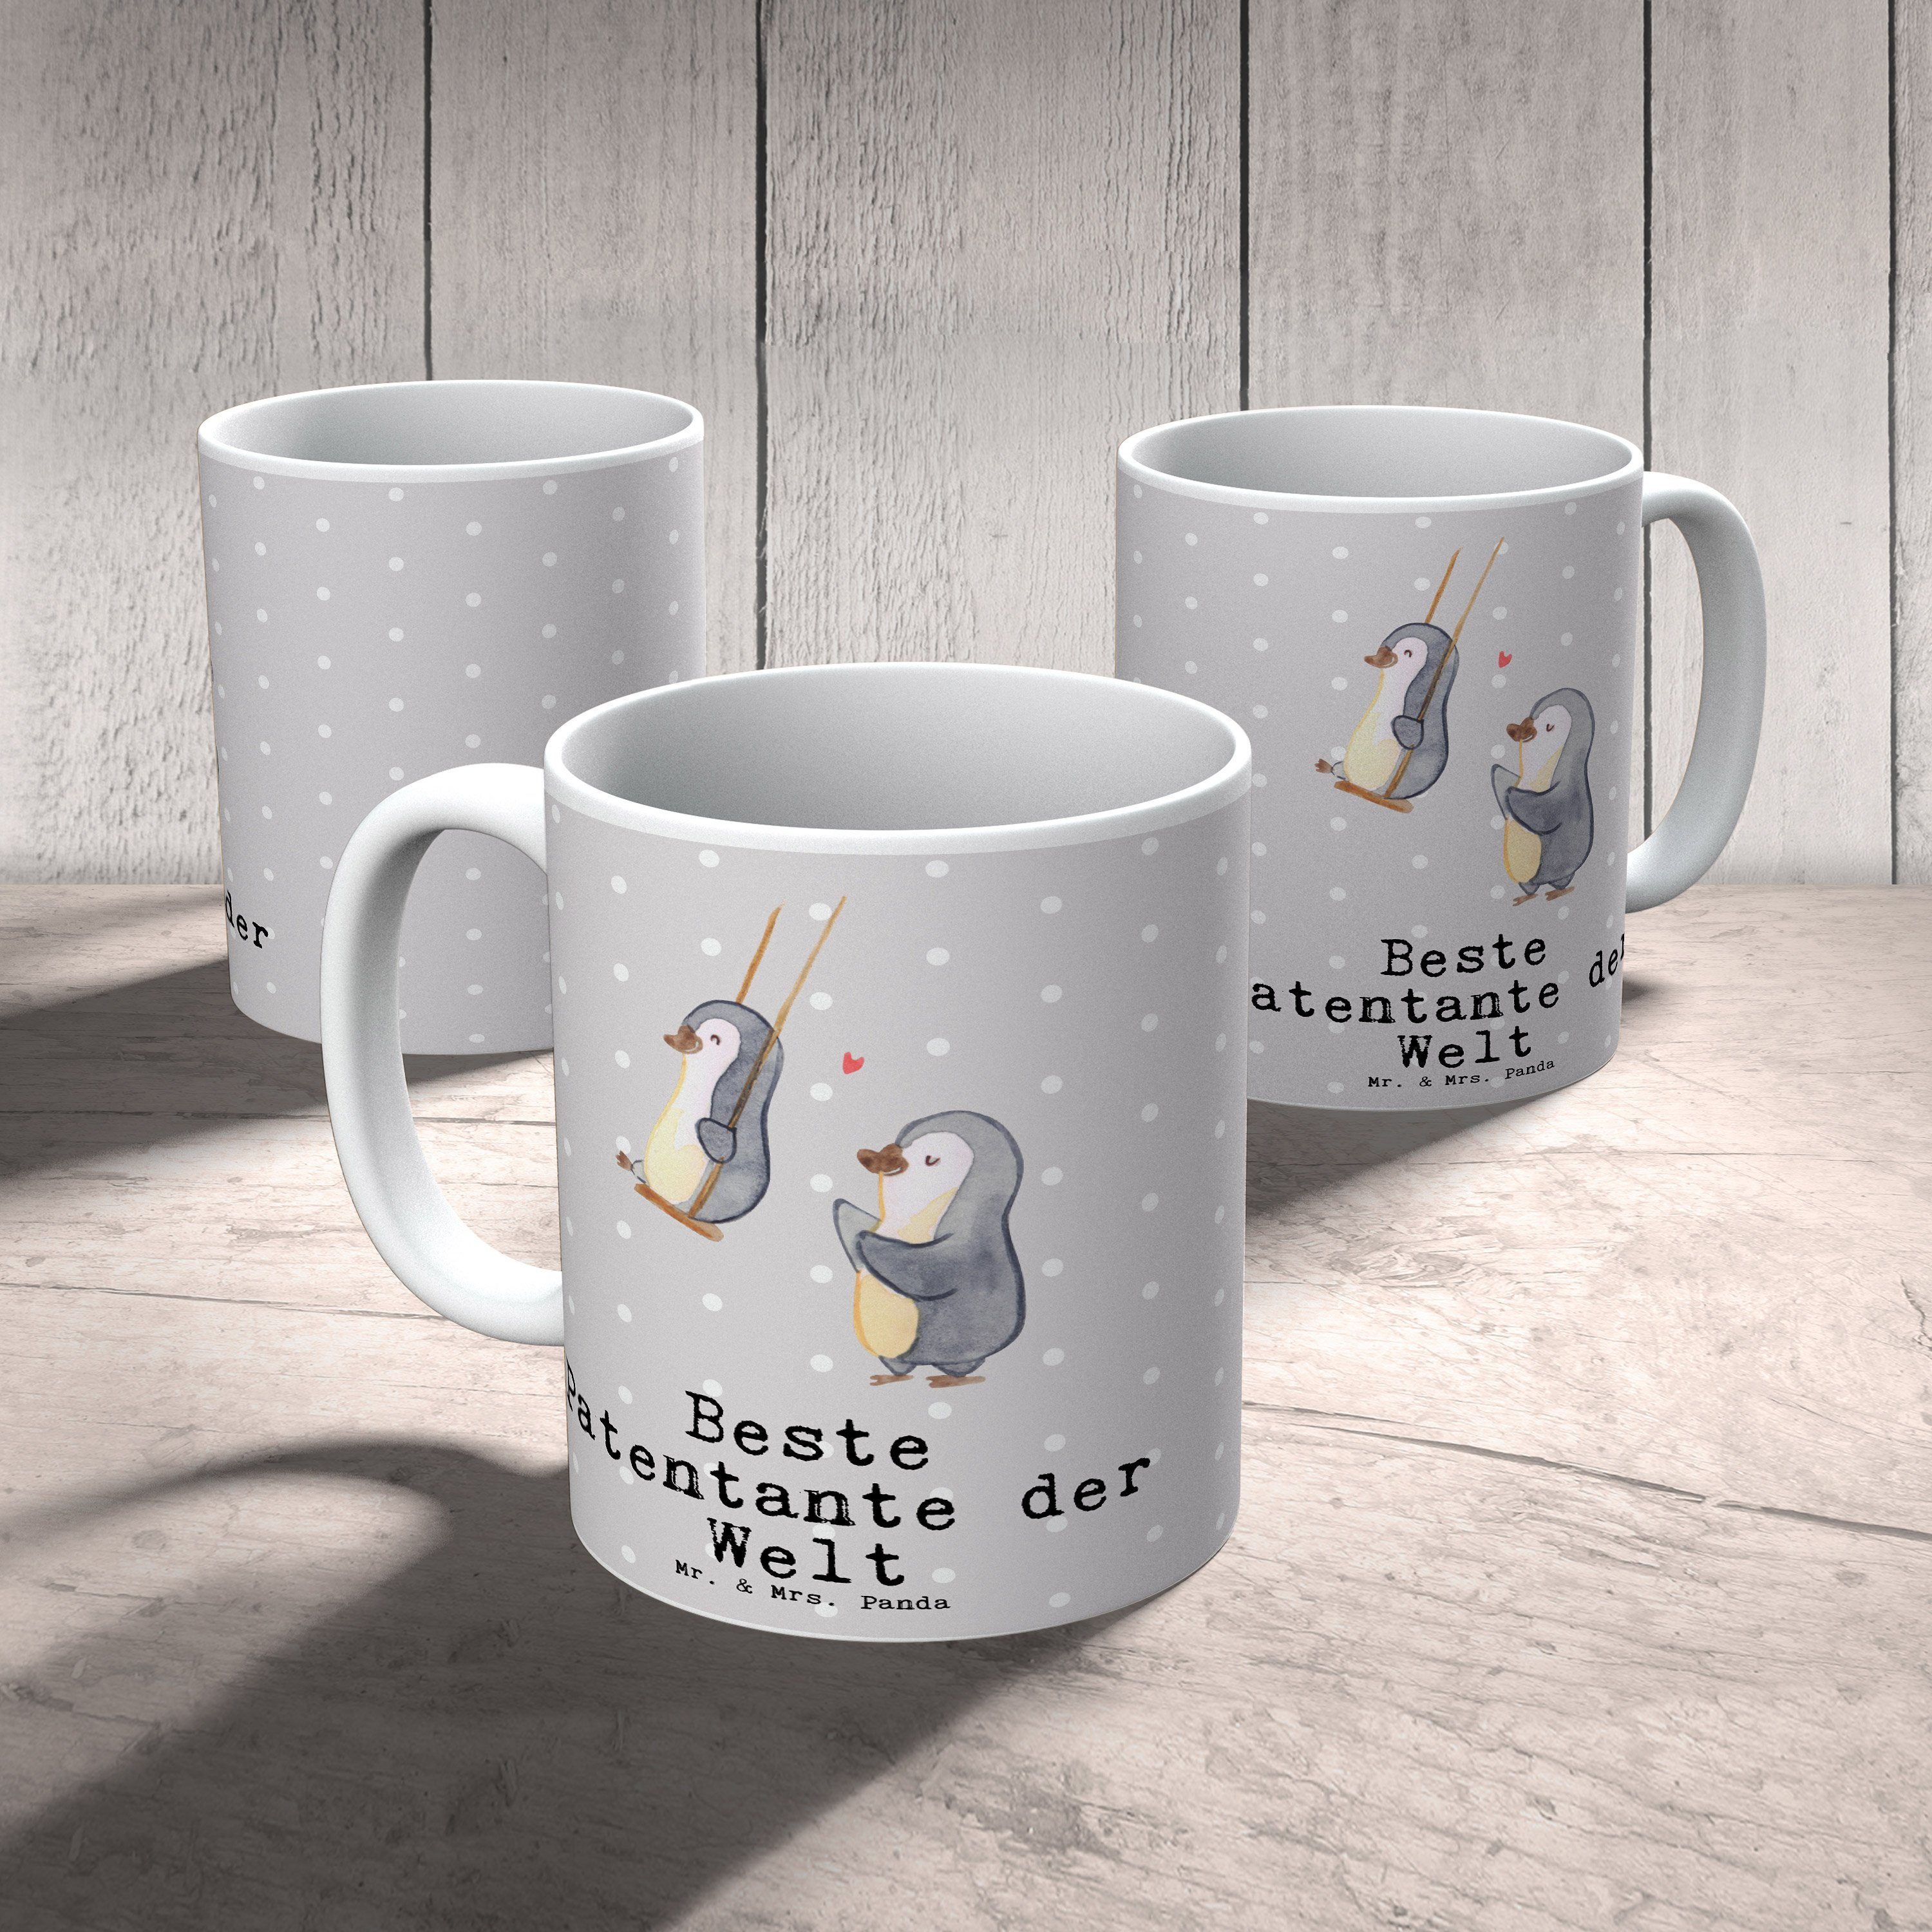 Beste Keramik Pastell & Pinguin Mrs. Patentante Grau Welt Panda Tasse - Mr. Geburtst, der - Geschenk,